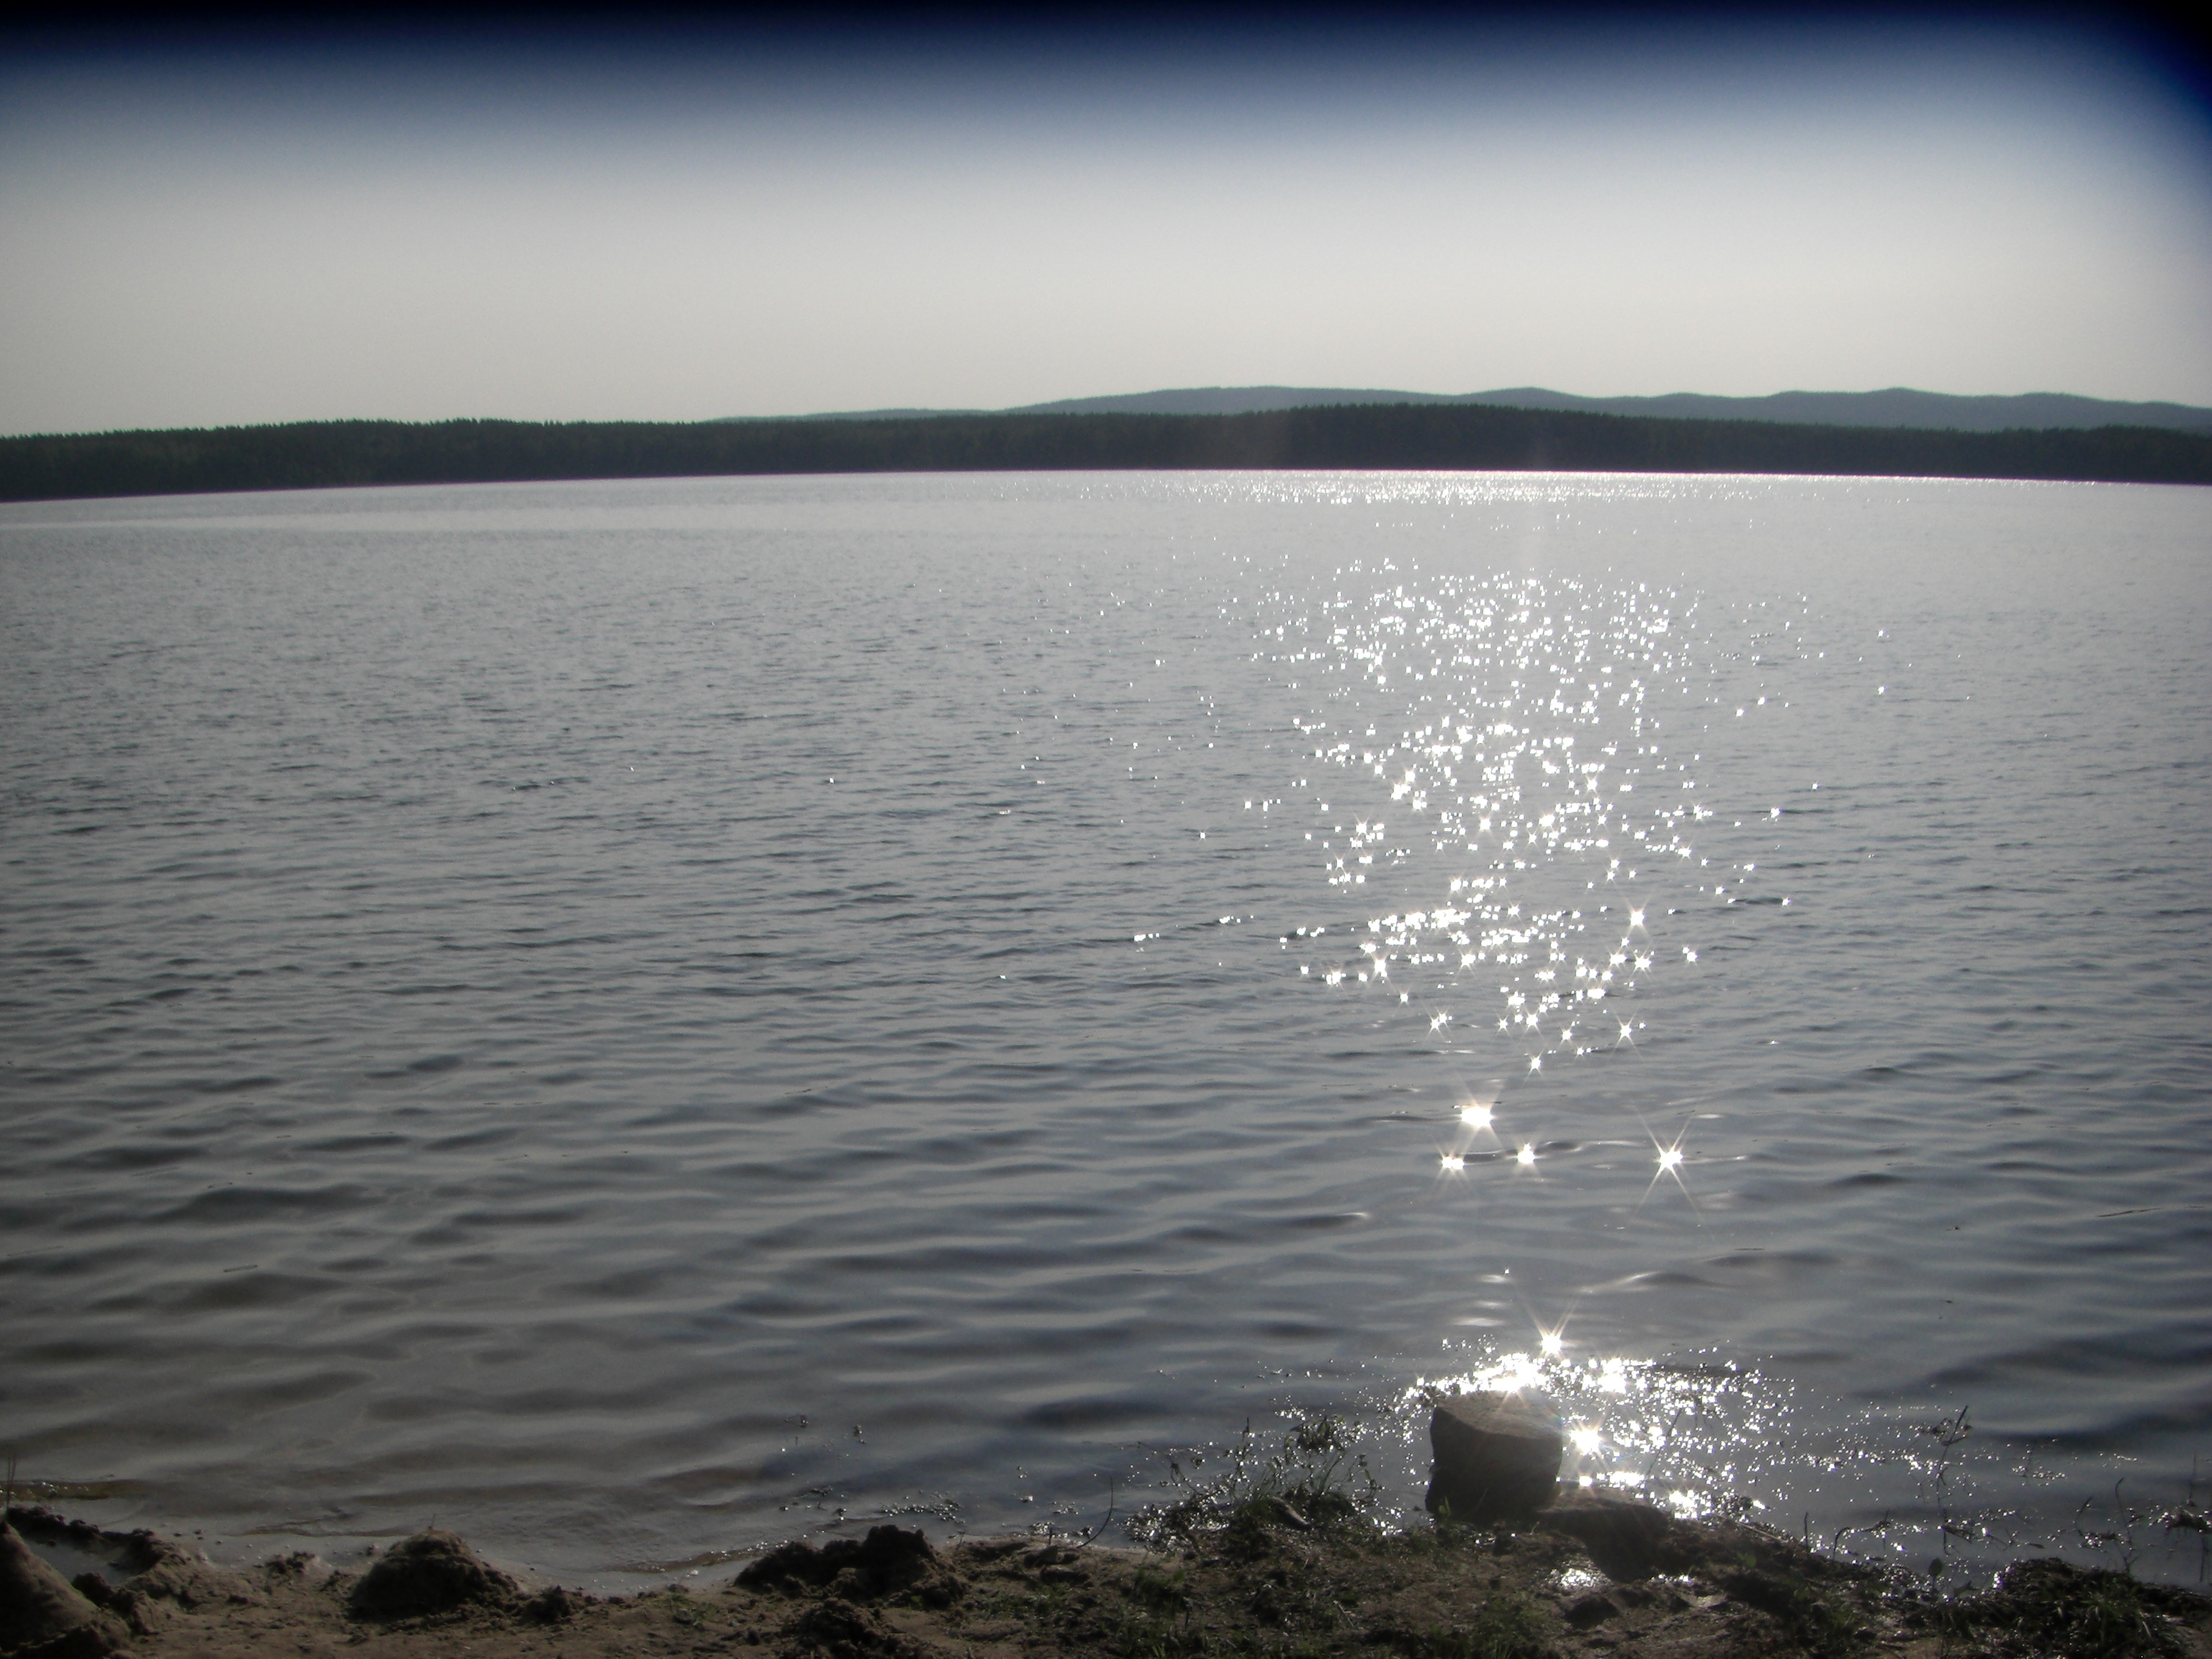 озеро большой еланчик челябинская область